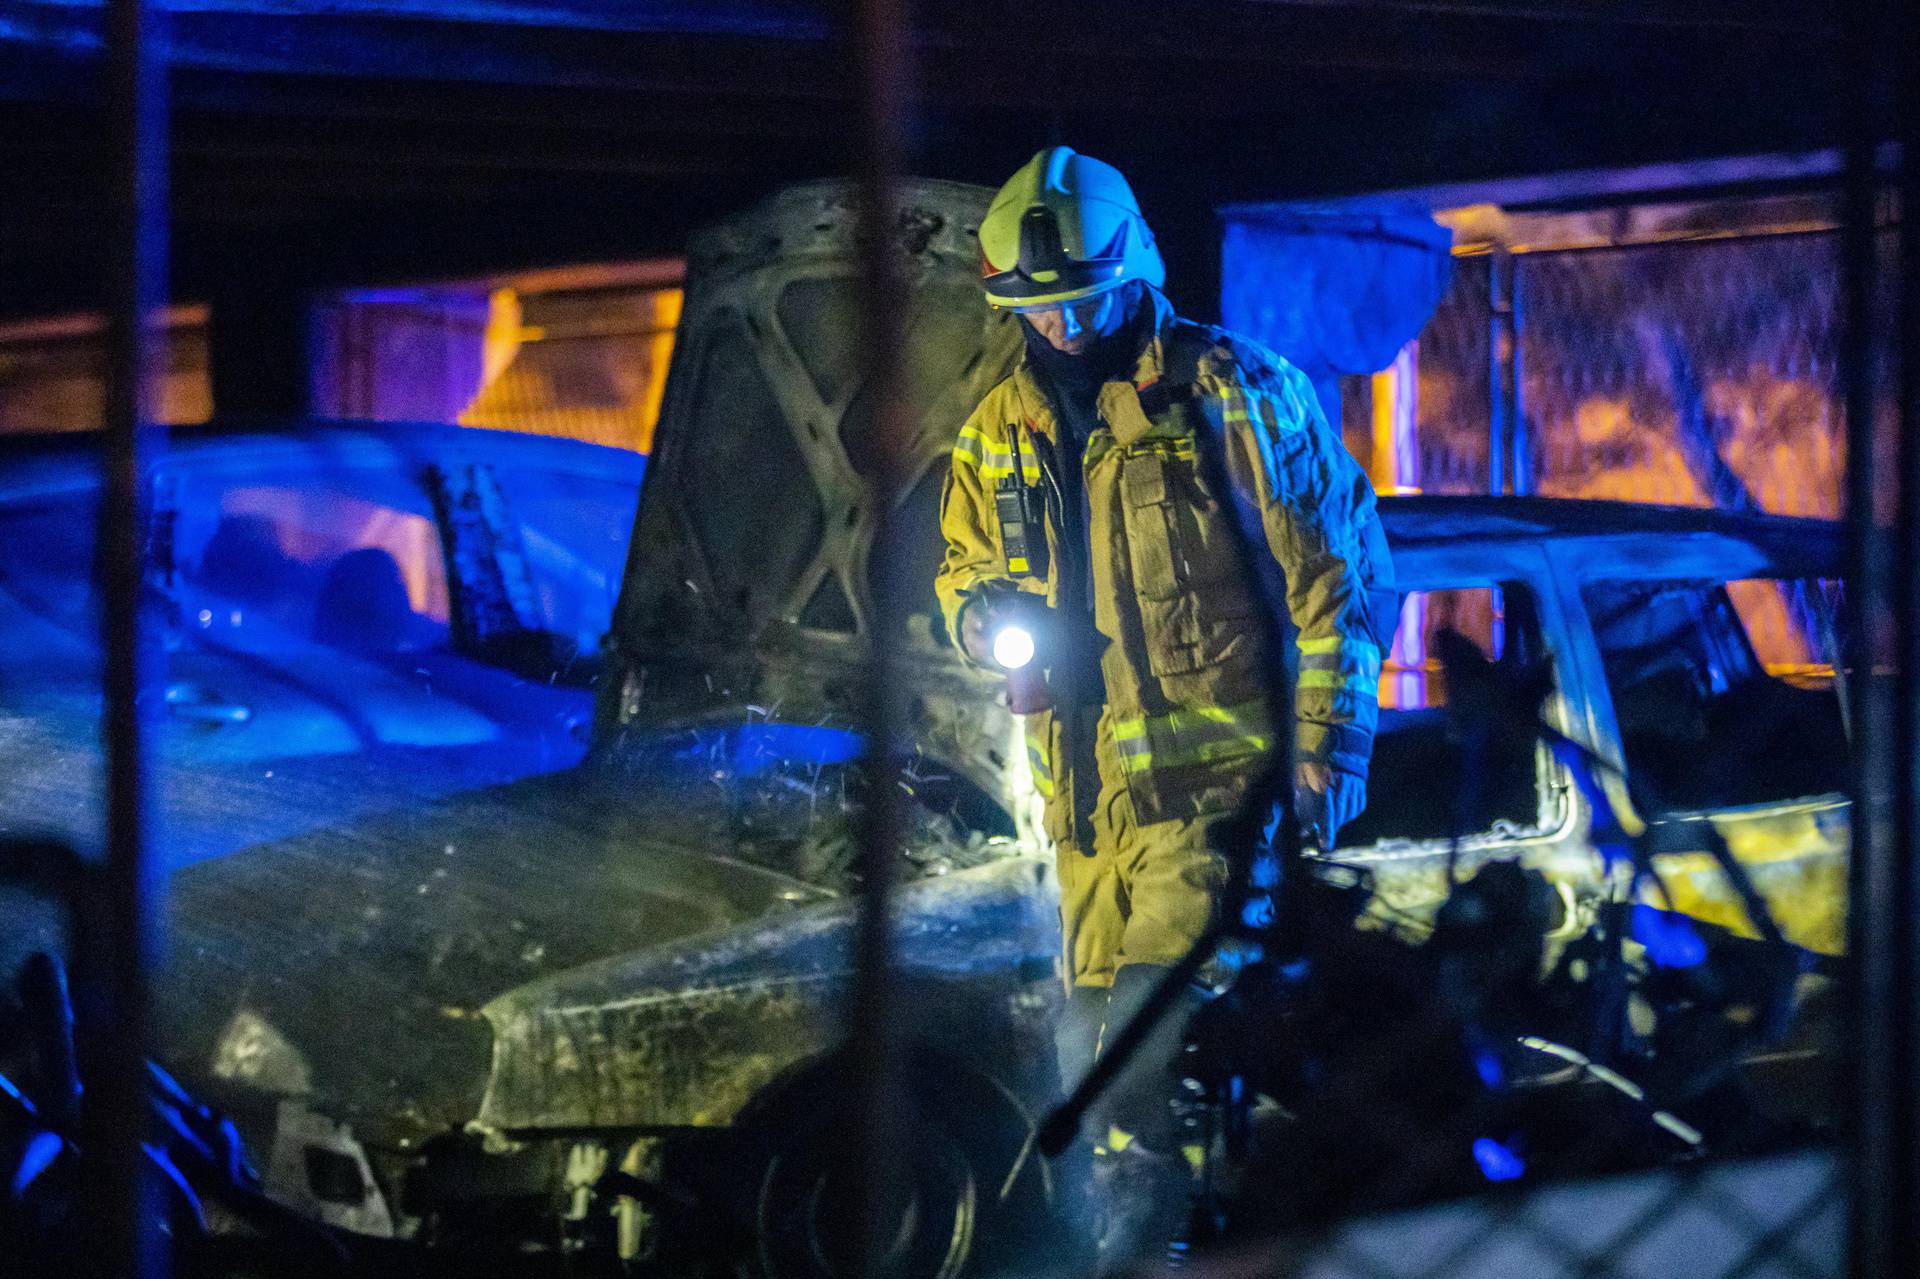 Split: U garaži na Pujankama izgorjelo nekoliko motocikala i automobila